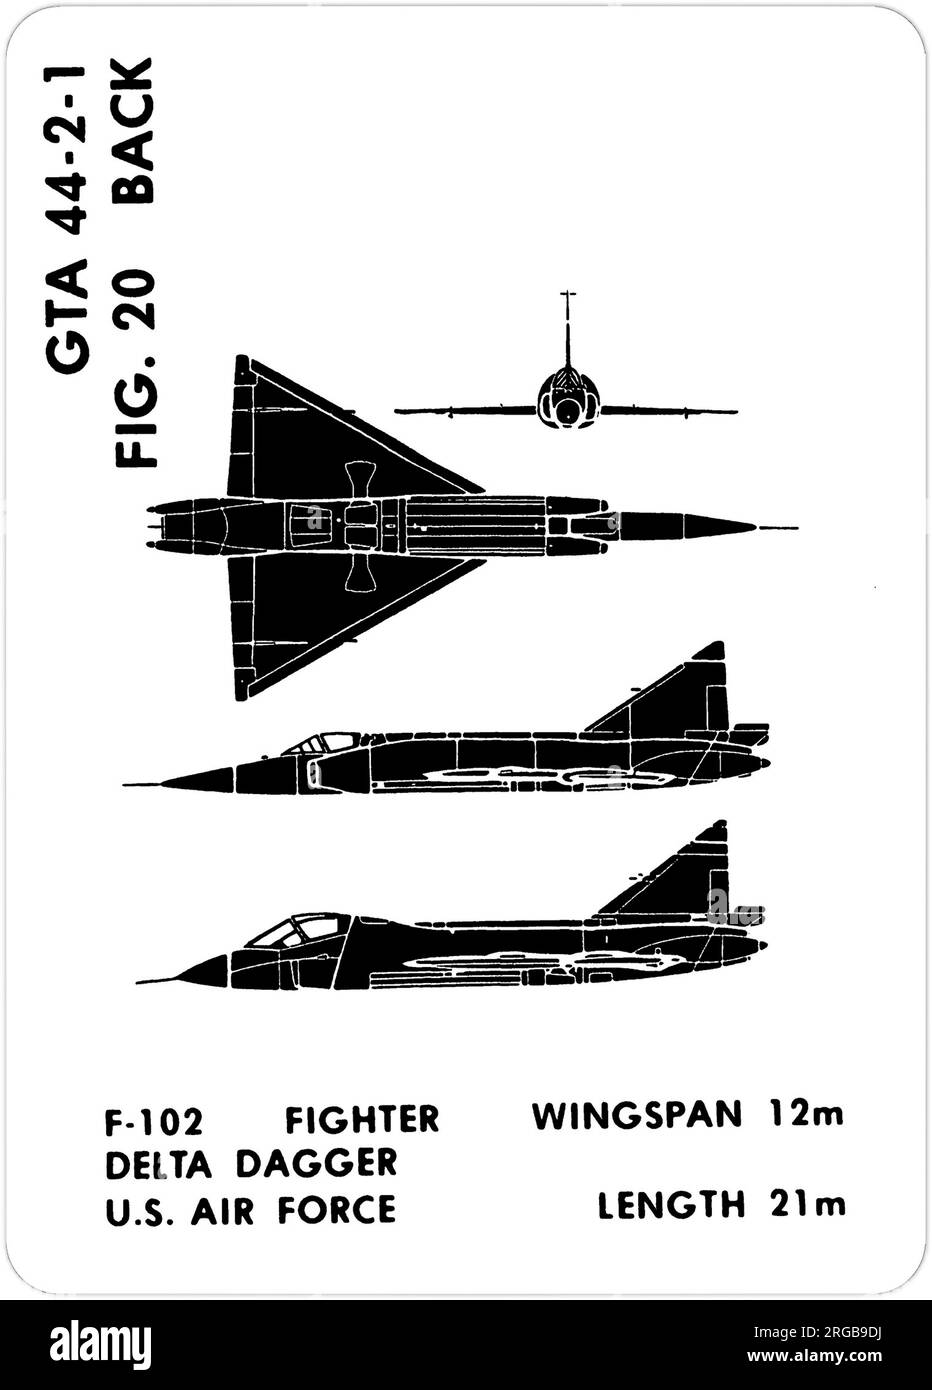 Convair F-102A - TF-102A Delta Dagger. Questa è una delle serie di Graphics Training Aids (GTA) utilizzati dall'esercito degli Stati Uniti per addestrare il loro personale a riconoscere gli aerei amichevoli e ostili. Questo particolare set, GTA 44-2-1, è stato pubblicato nel July1977. Il set comprende aerei provenienti da: Canada, Italia, Regno Unito, Stati Uniti e URSS. Foto Stock